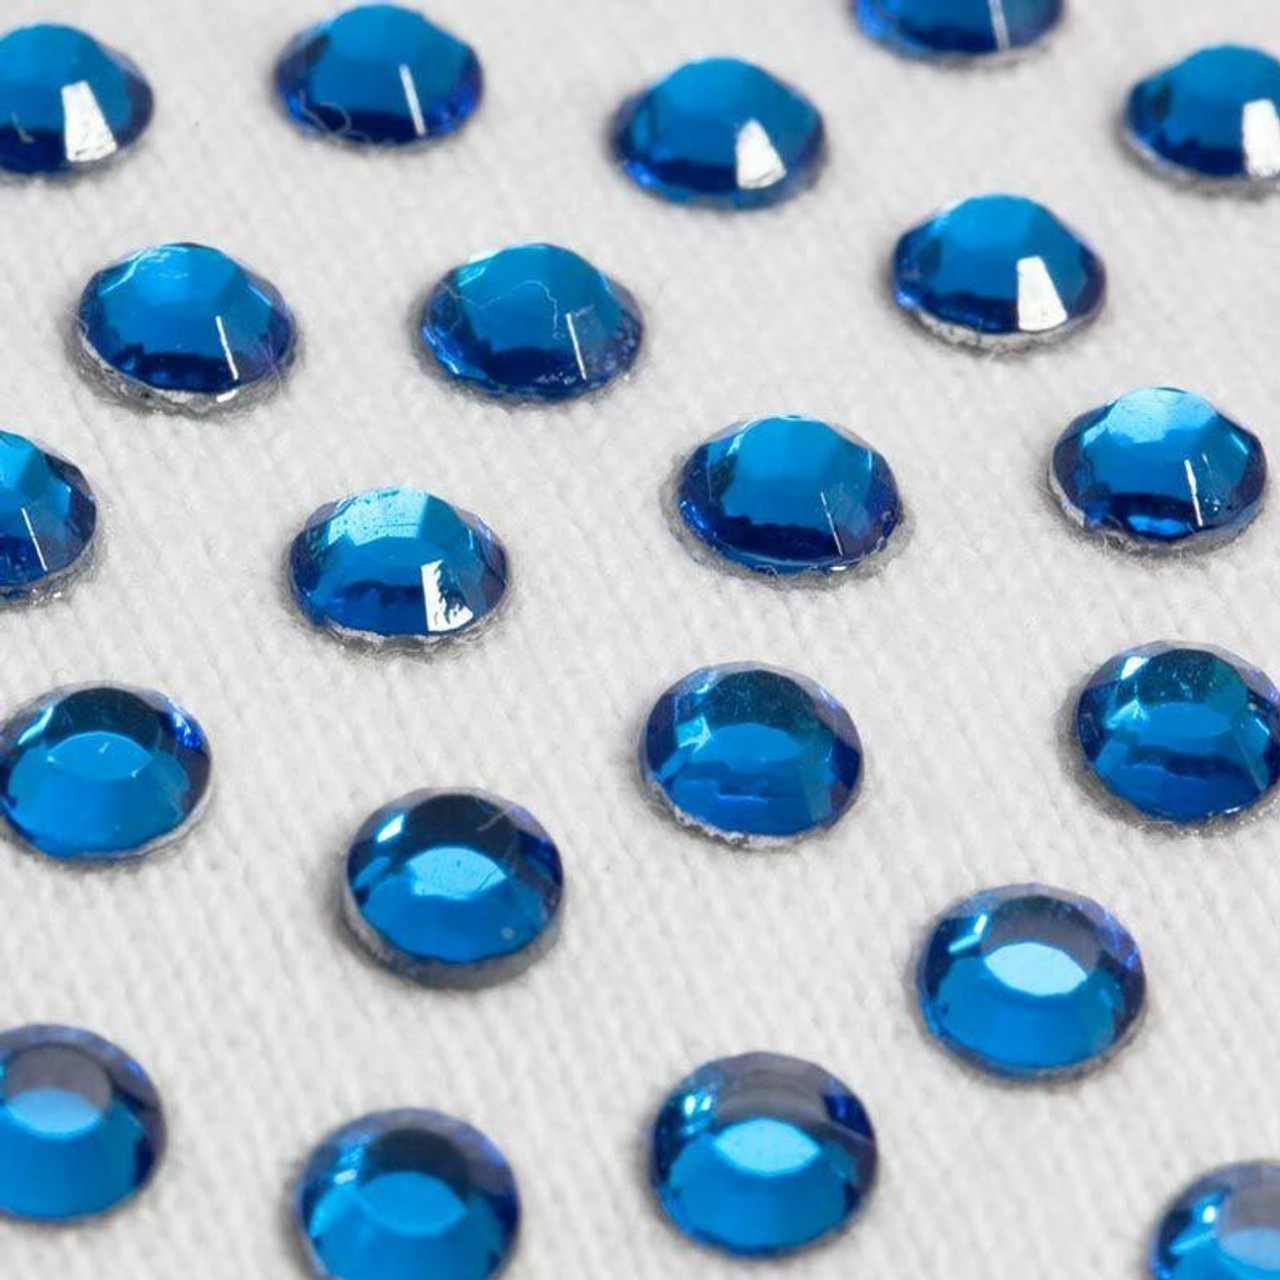 ThreadNanny Czech 3mm/10ss 10gross (1440Pcs)Hotfix Rhinestones Crystals  Navy Blue (Sapphire) Color 